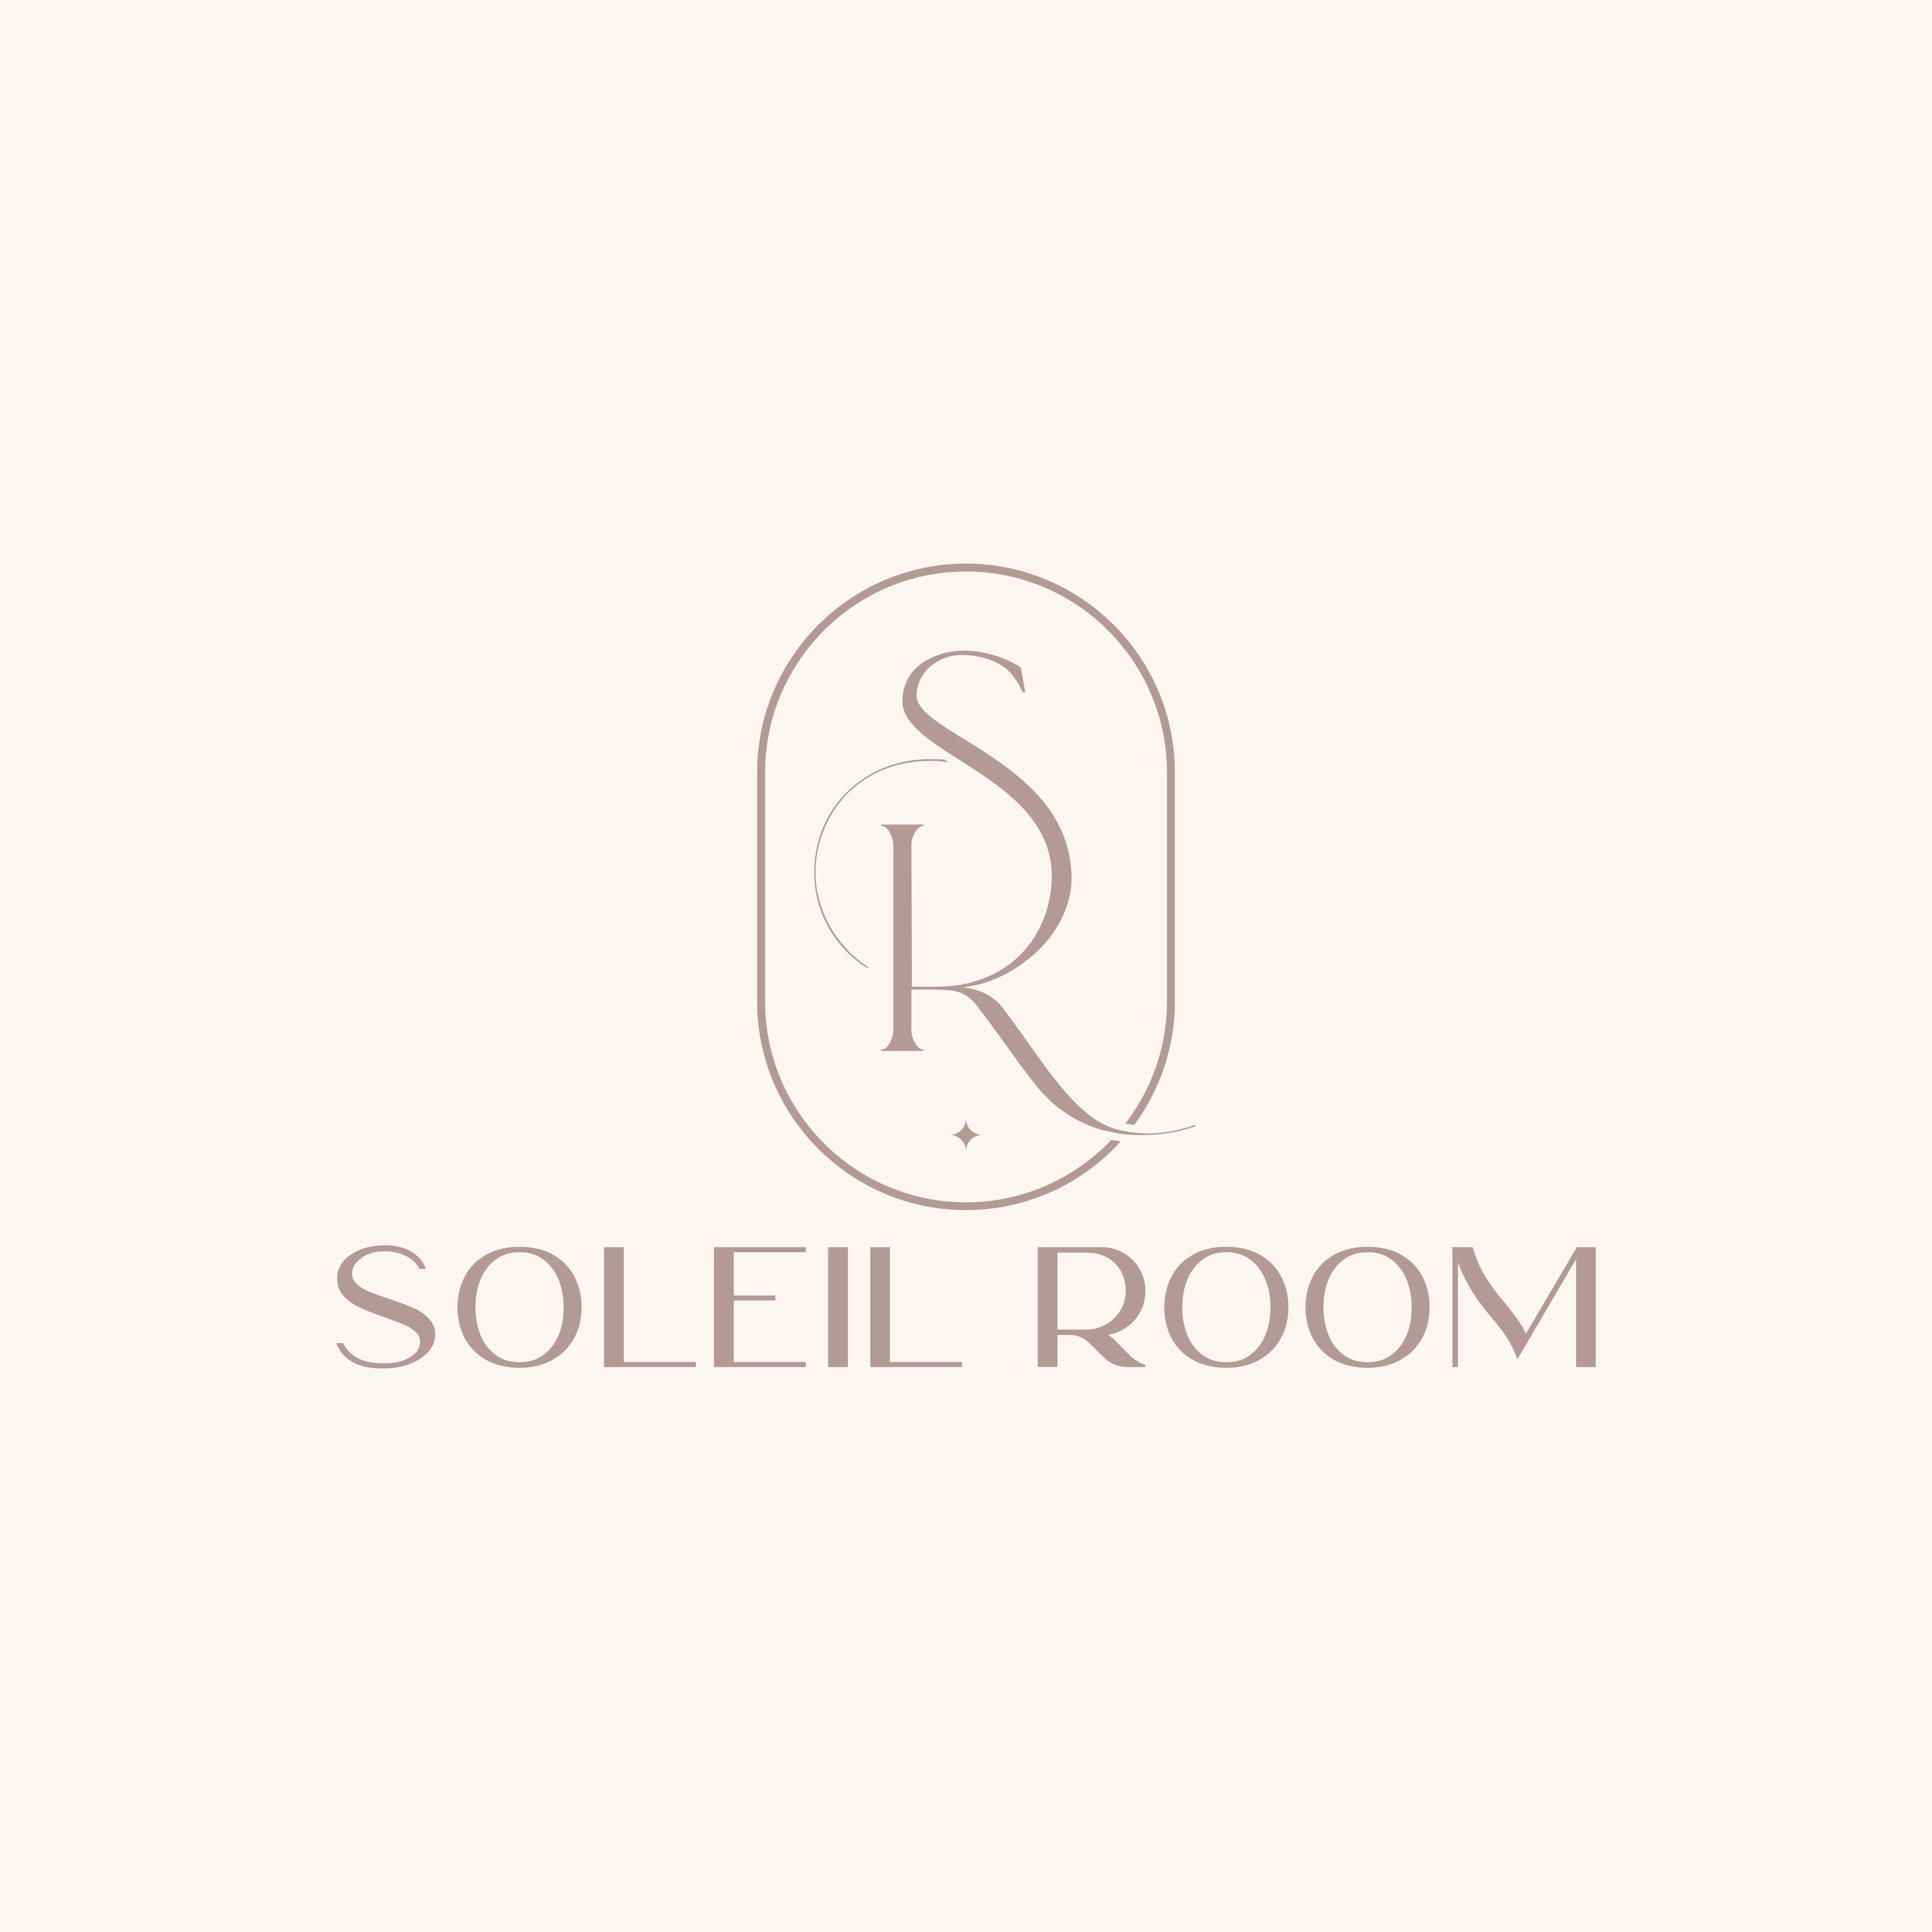 SOLEIL ROOM